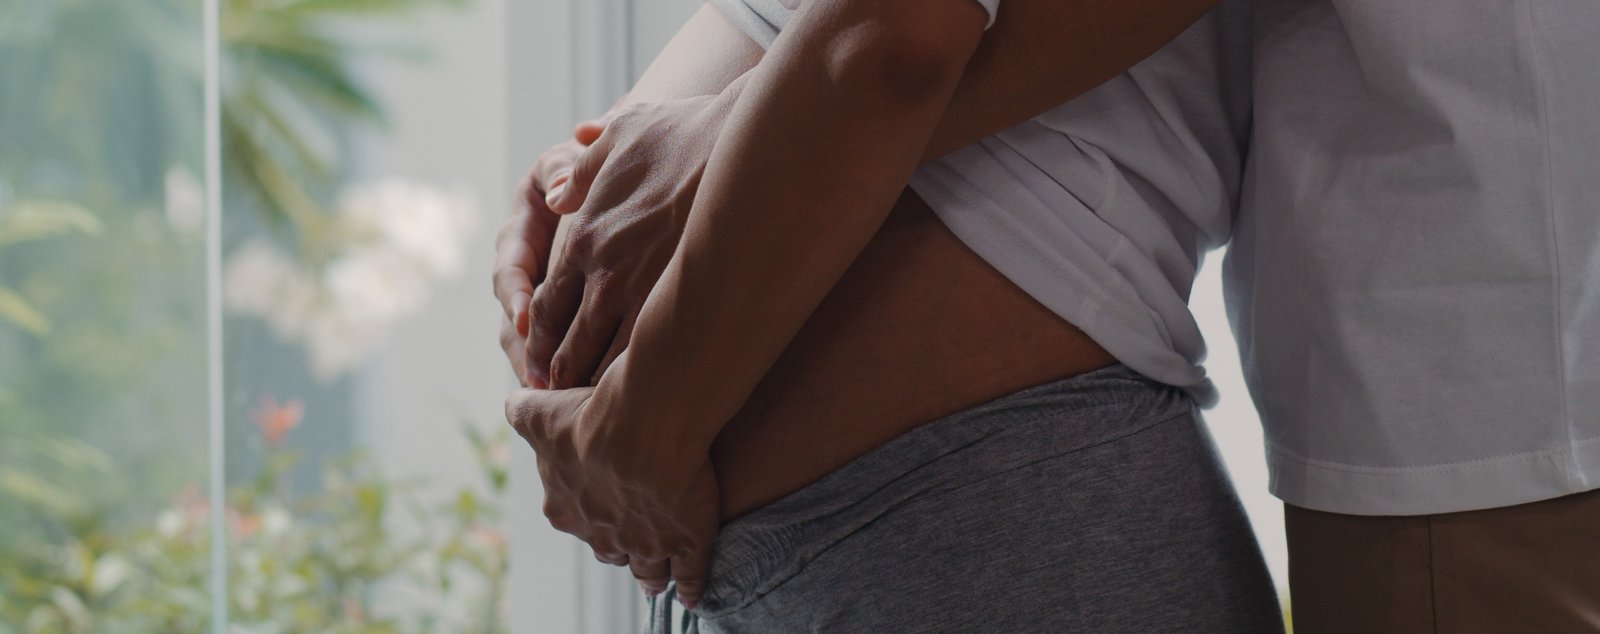 8 pasos para cuidar bebe en el vientre